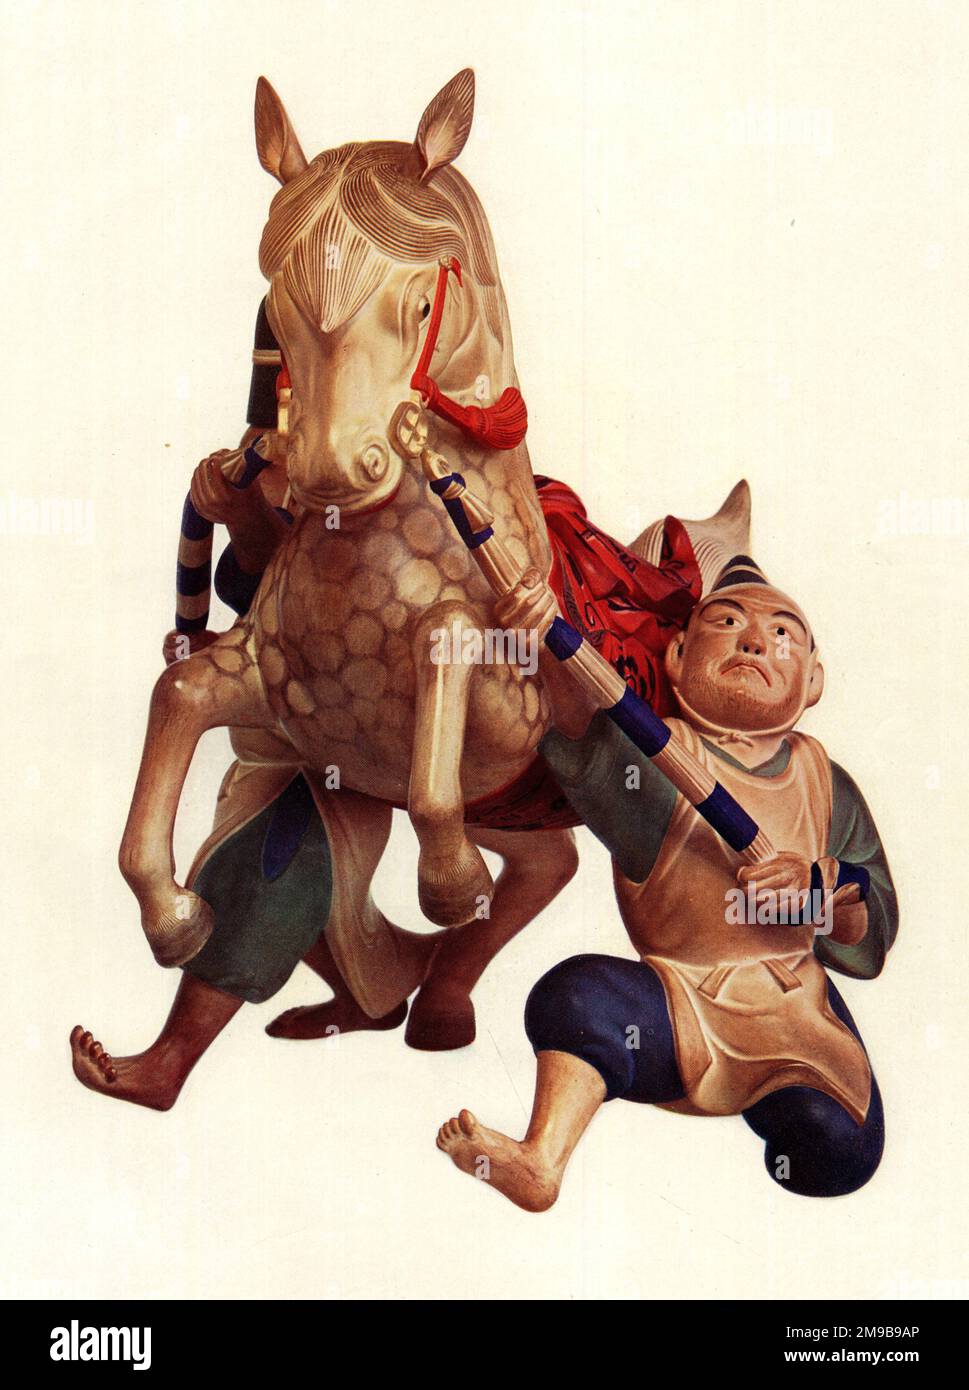 Cavallo Sacro e assistenti di ceramica Bizen Giapponese - articolo di terracotta risalente agli inizi del 18th ° secolo, quando i forni sono stati stabiliti a Korakuen per la cottura di ceramica. C'è un senso di movimento nel pezzo, con gli assistenti che cercano di controllare il giovane cavallo boisterous. Foto Stock